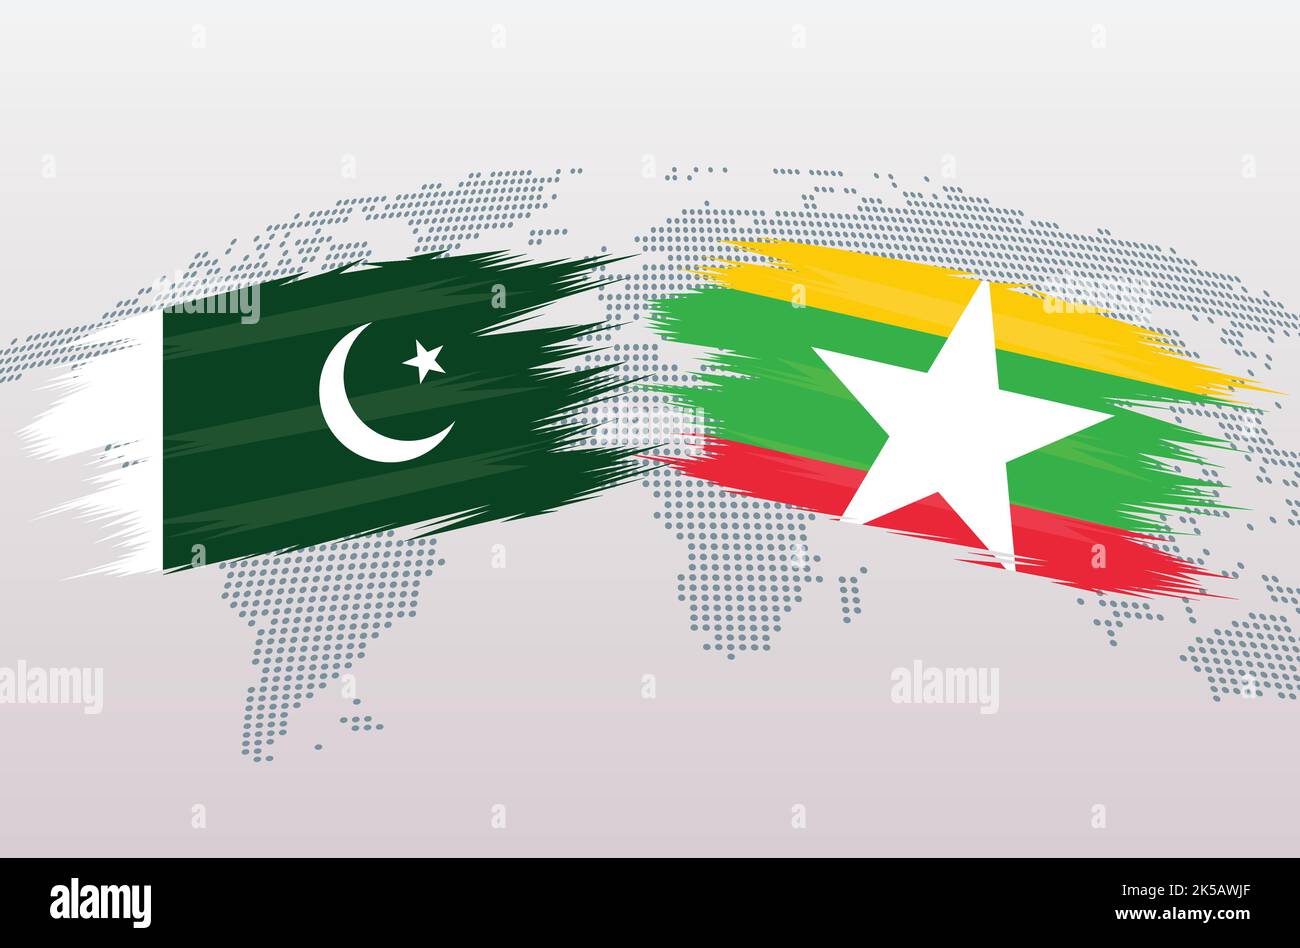 Pakistan vs Myanmar bandiere di Birmania. Repubblica islamica del Pakistan vs Myanmar bandiere di Birmania, isolate su sfondo grigio della mappa del mondo. Illustrazione vettoriale. Illustrazione Vettoriale